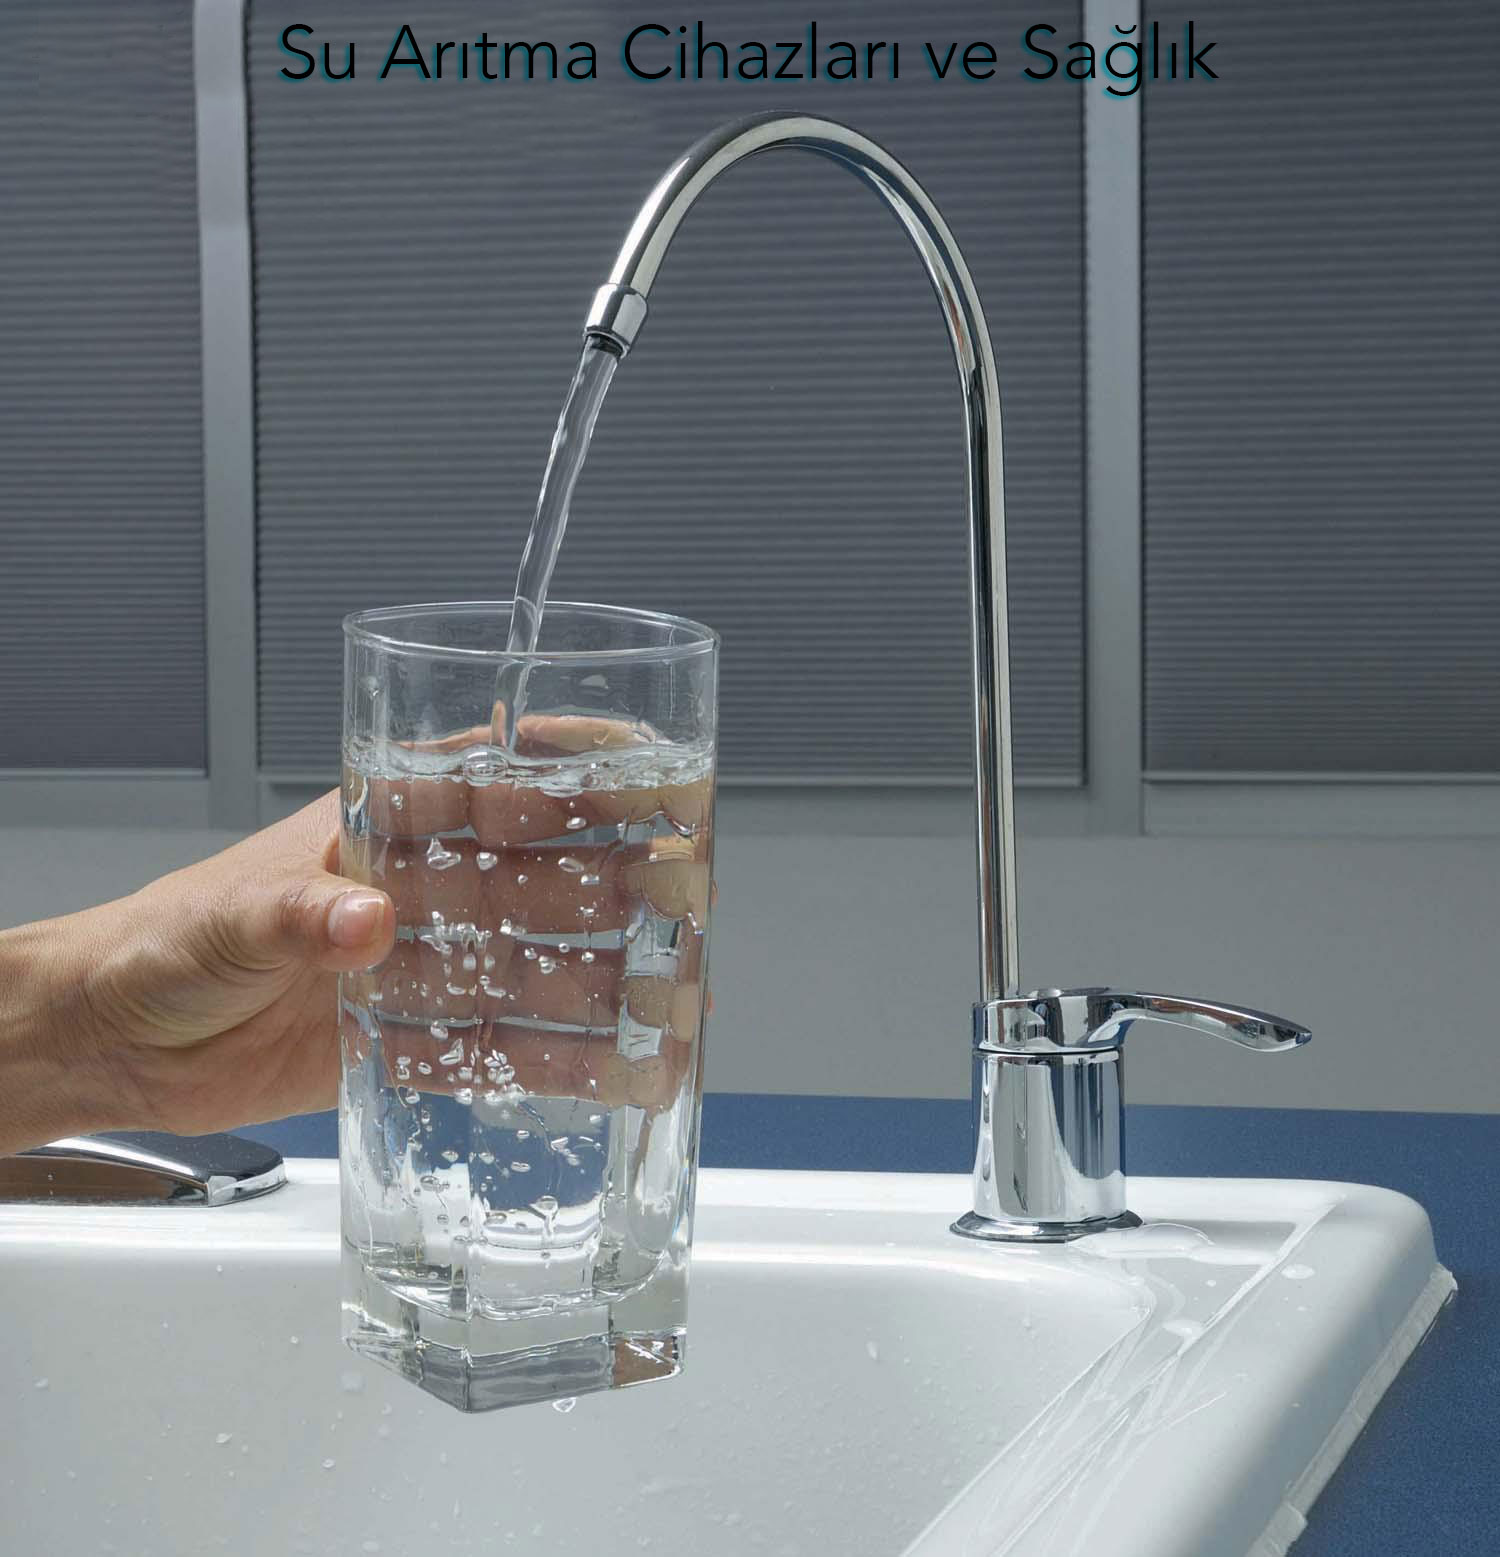 Su Arıtma Cihazları ve Sağlık